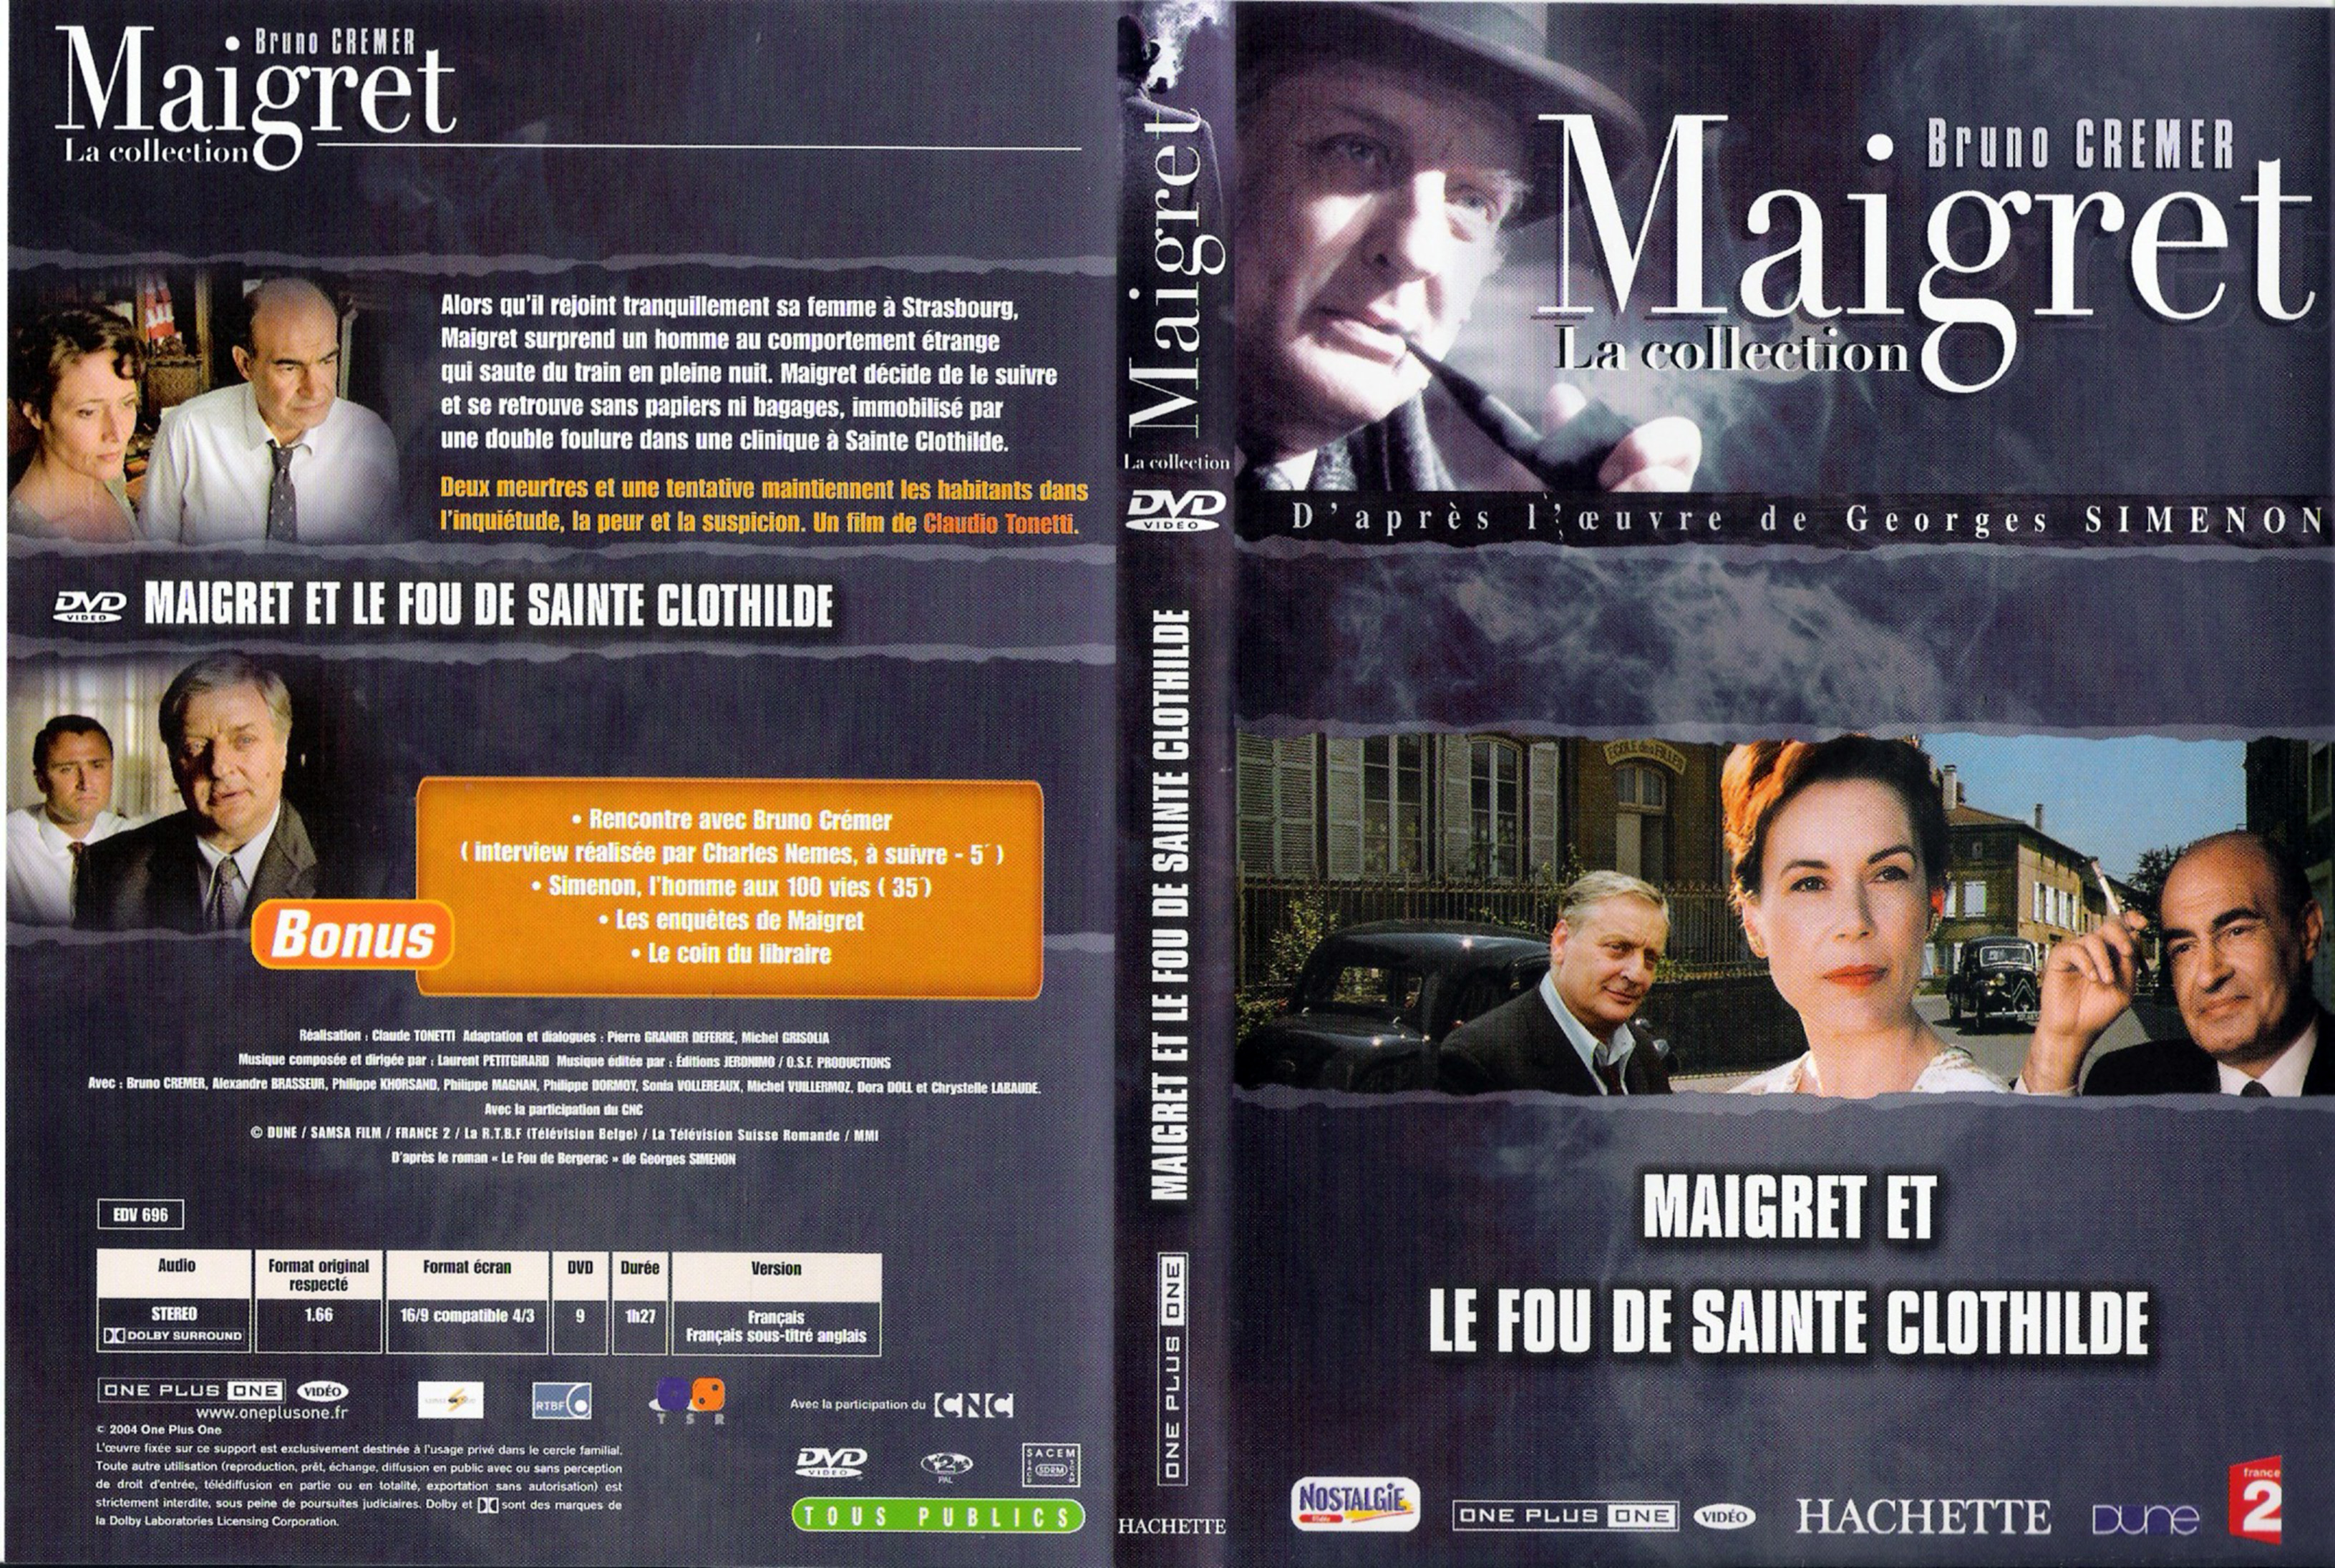 Jaquette DVD Maigret et le fou de Sainte Clothilde (Bruno Cremer)